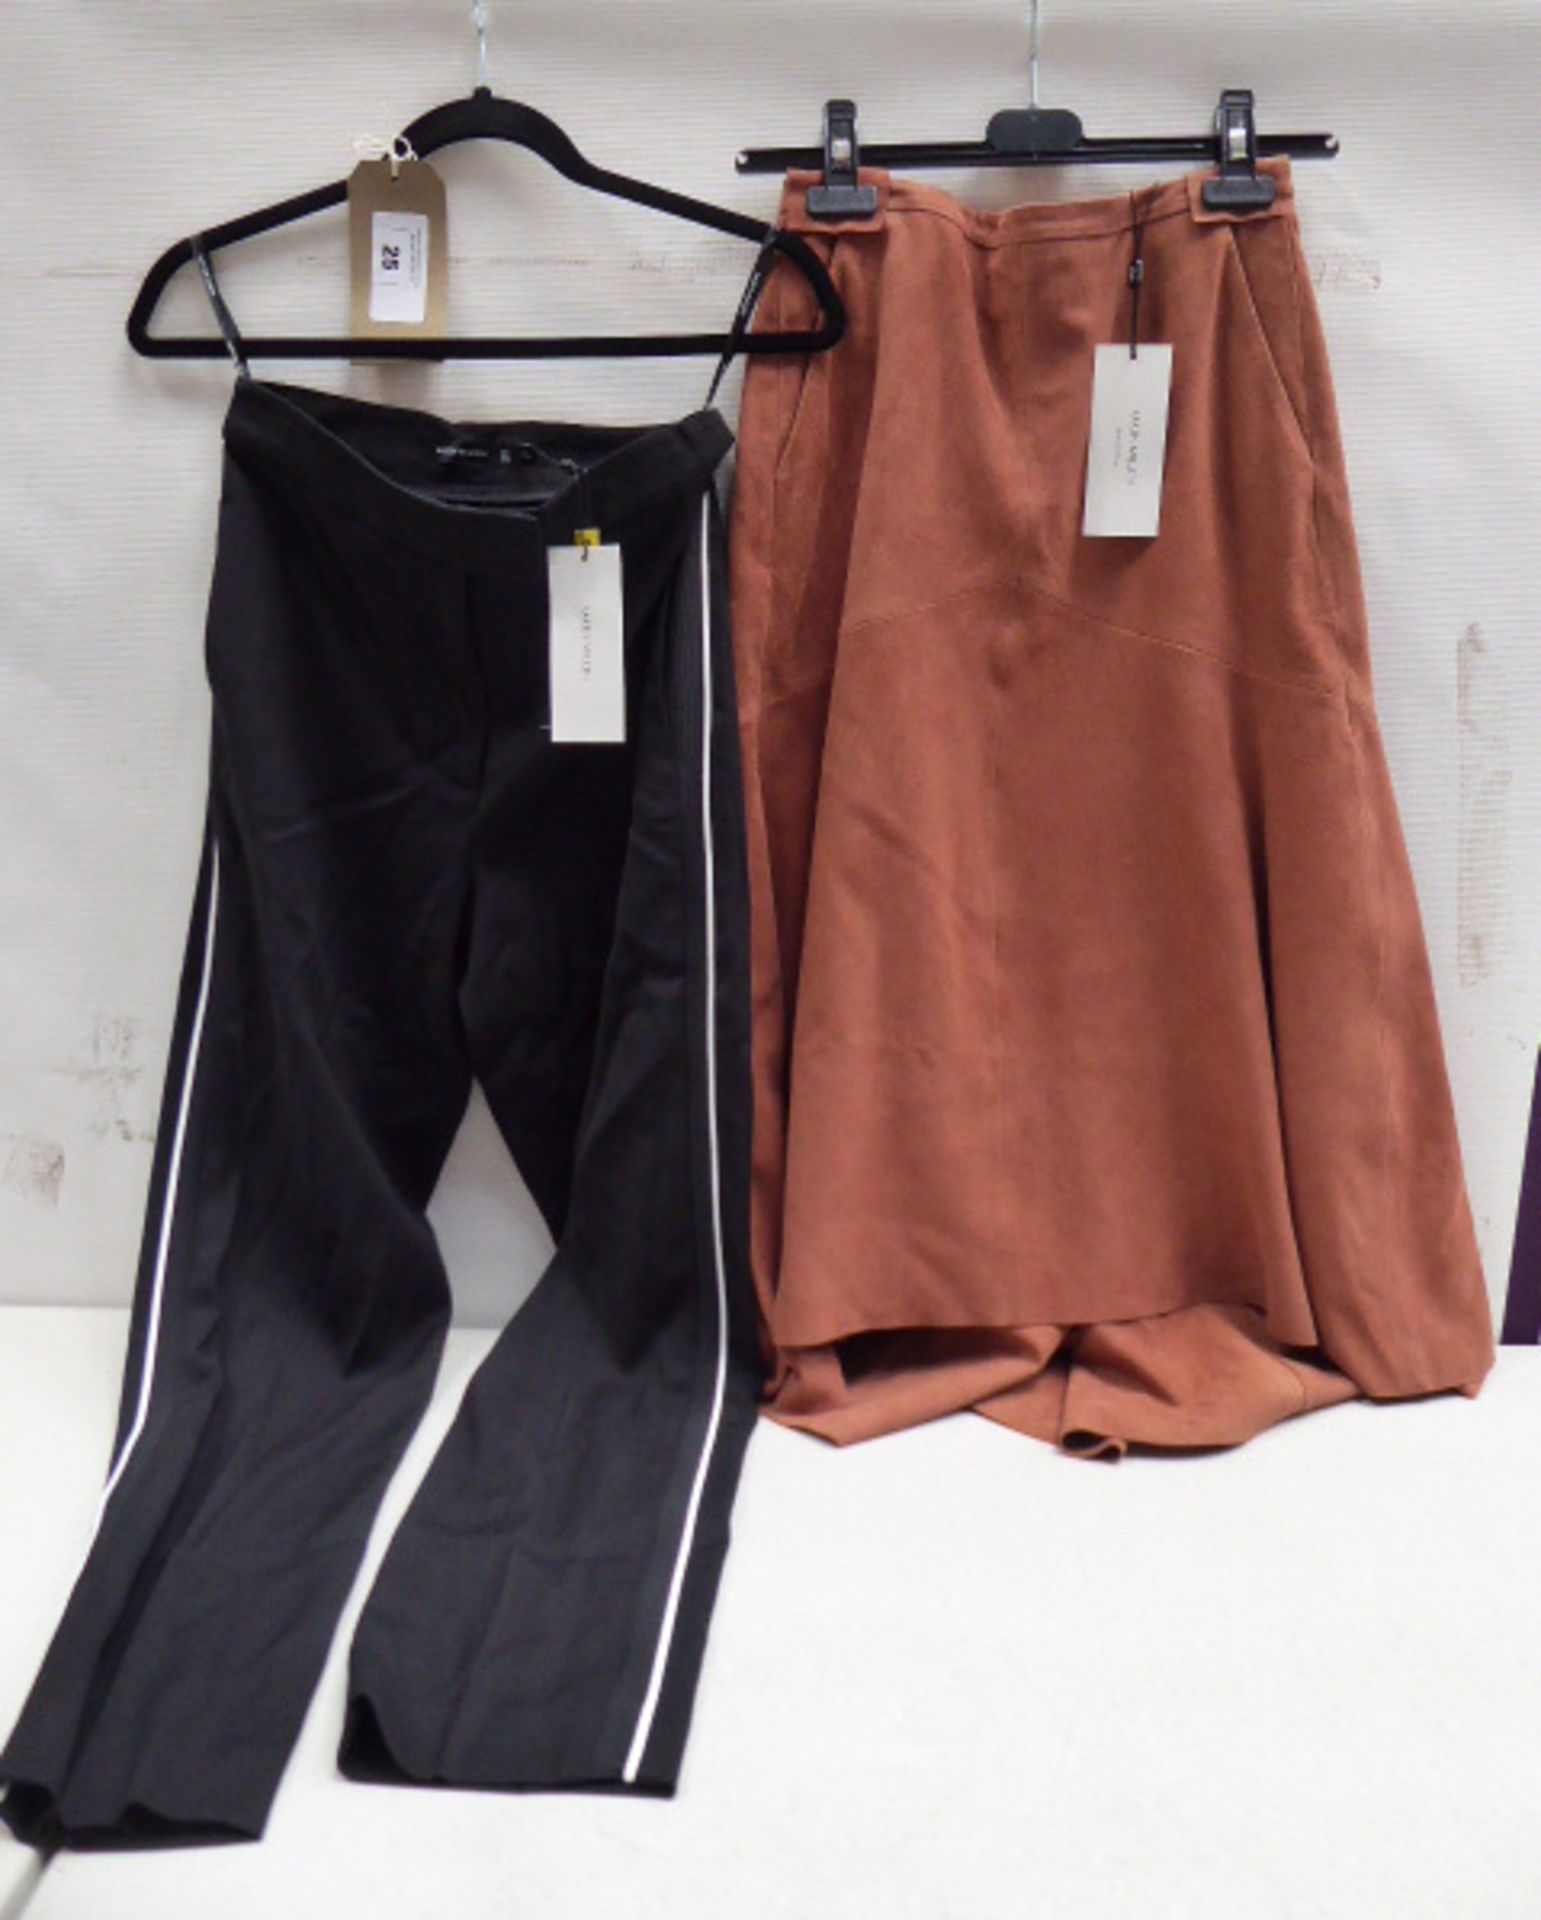 Karen Millen black trousers size 8 and Karen Millen brown suede skirt size 8